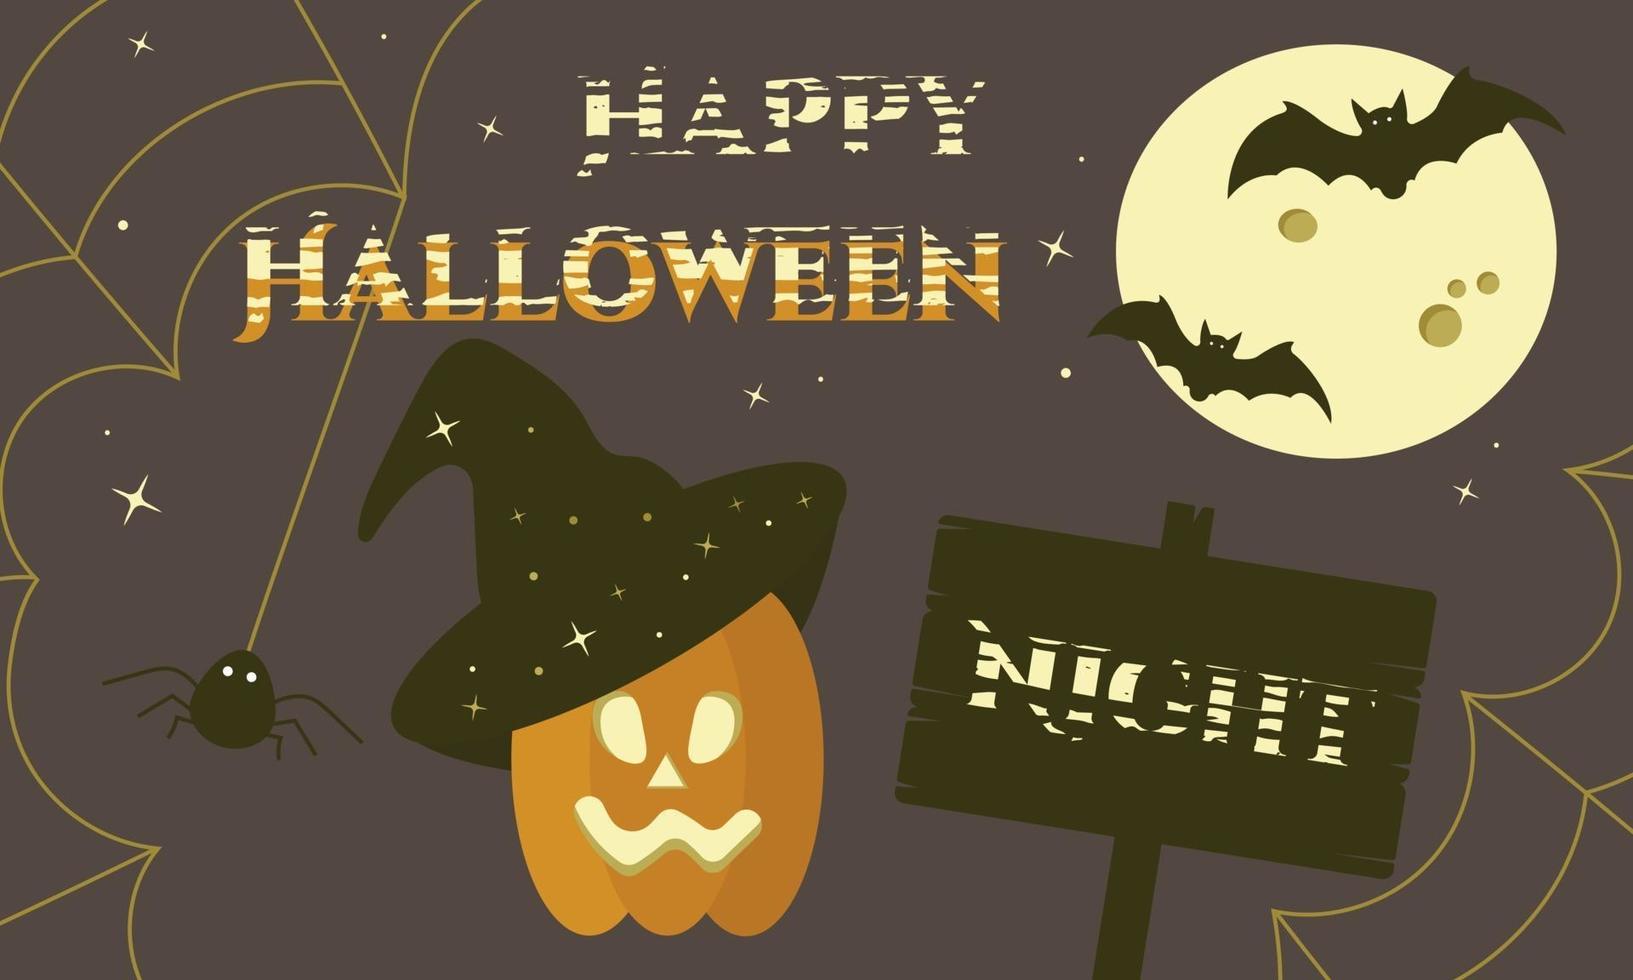 Happy Halloween night banner with moon, bats, spiderweb and pumpkin vector